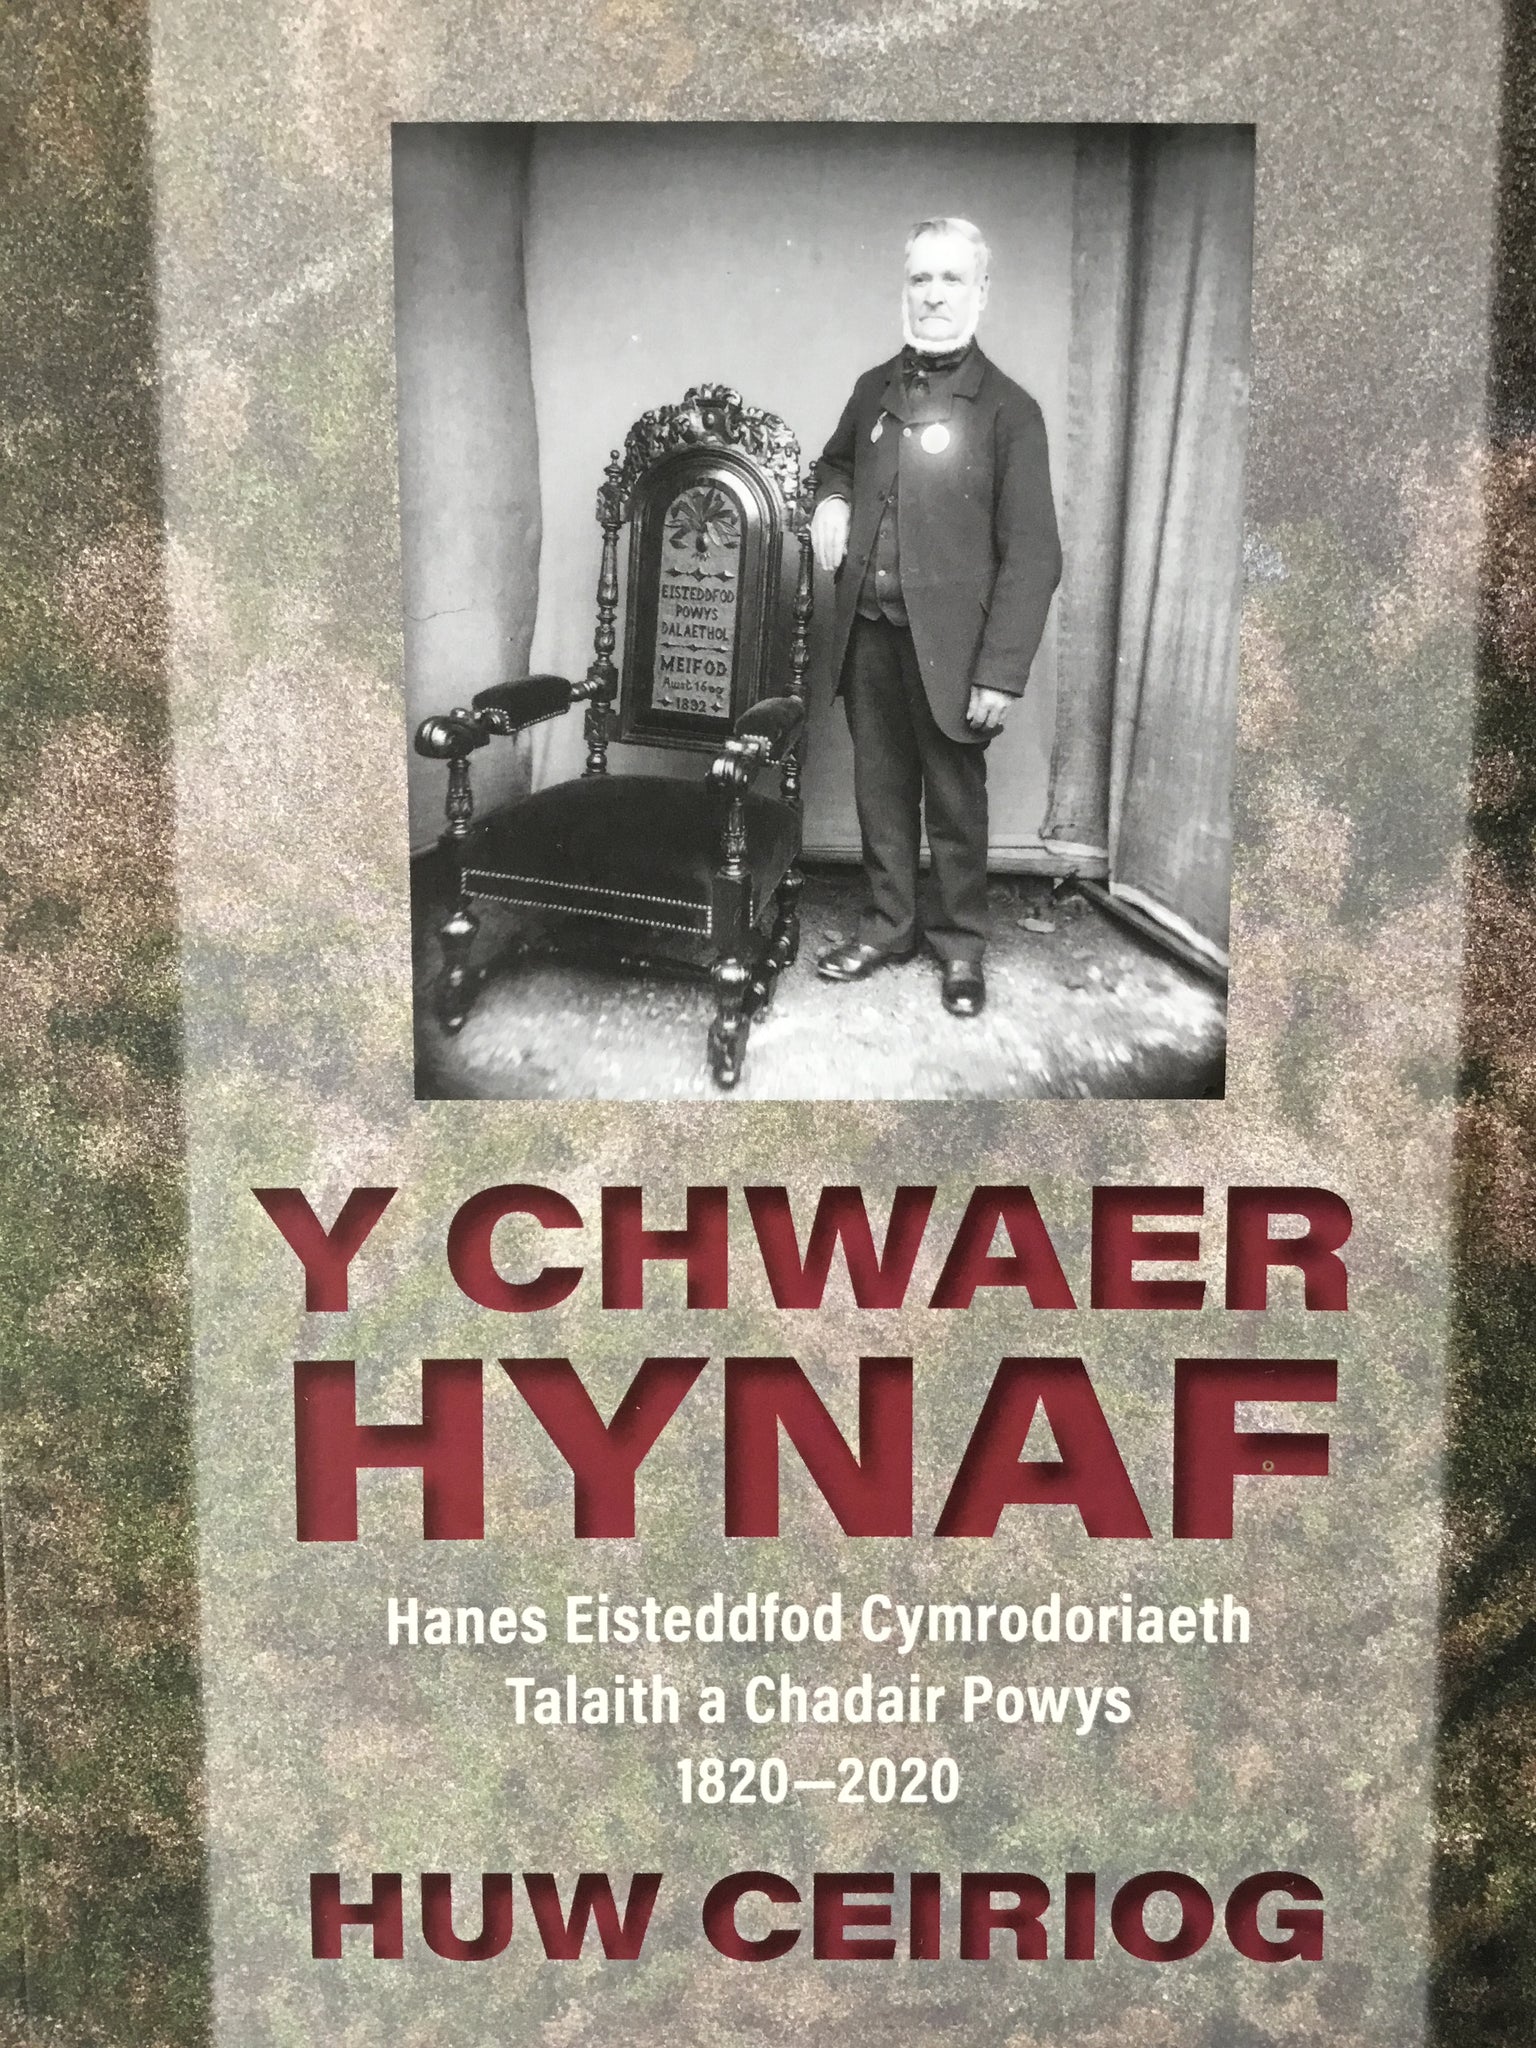 Y Chwaer Hynaf:  History of Eisteddfod Powys 1820-2020